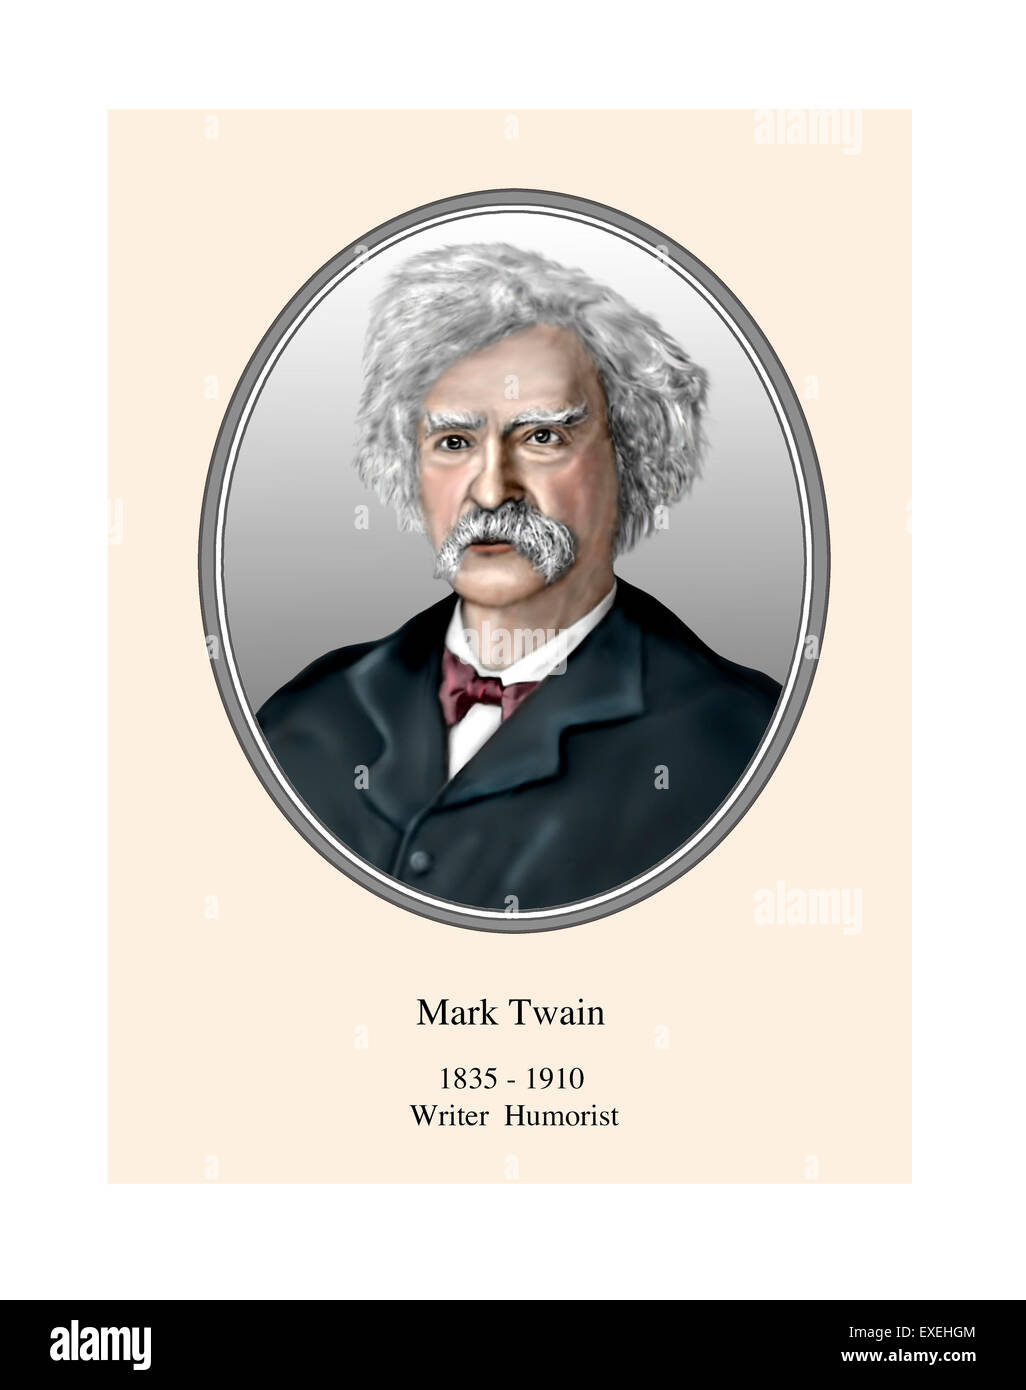 Portrait de Mark Twain Illustration moderne Banque D'Images